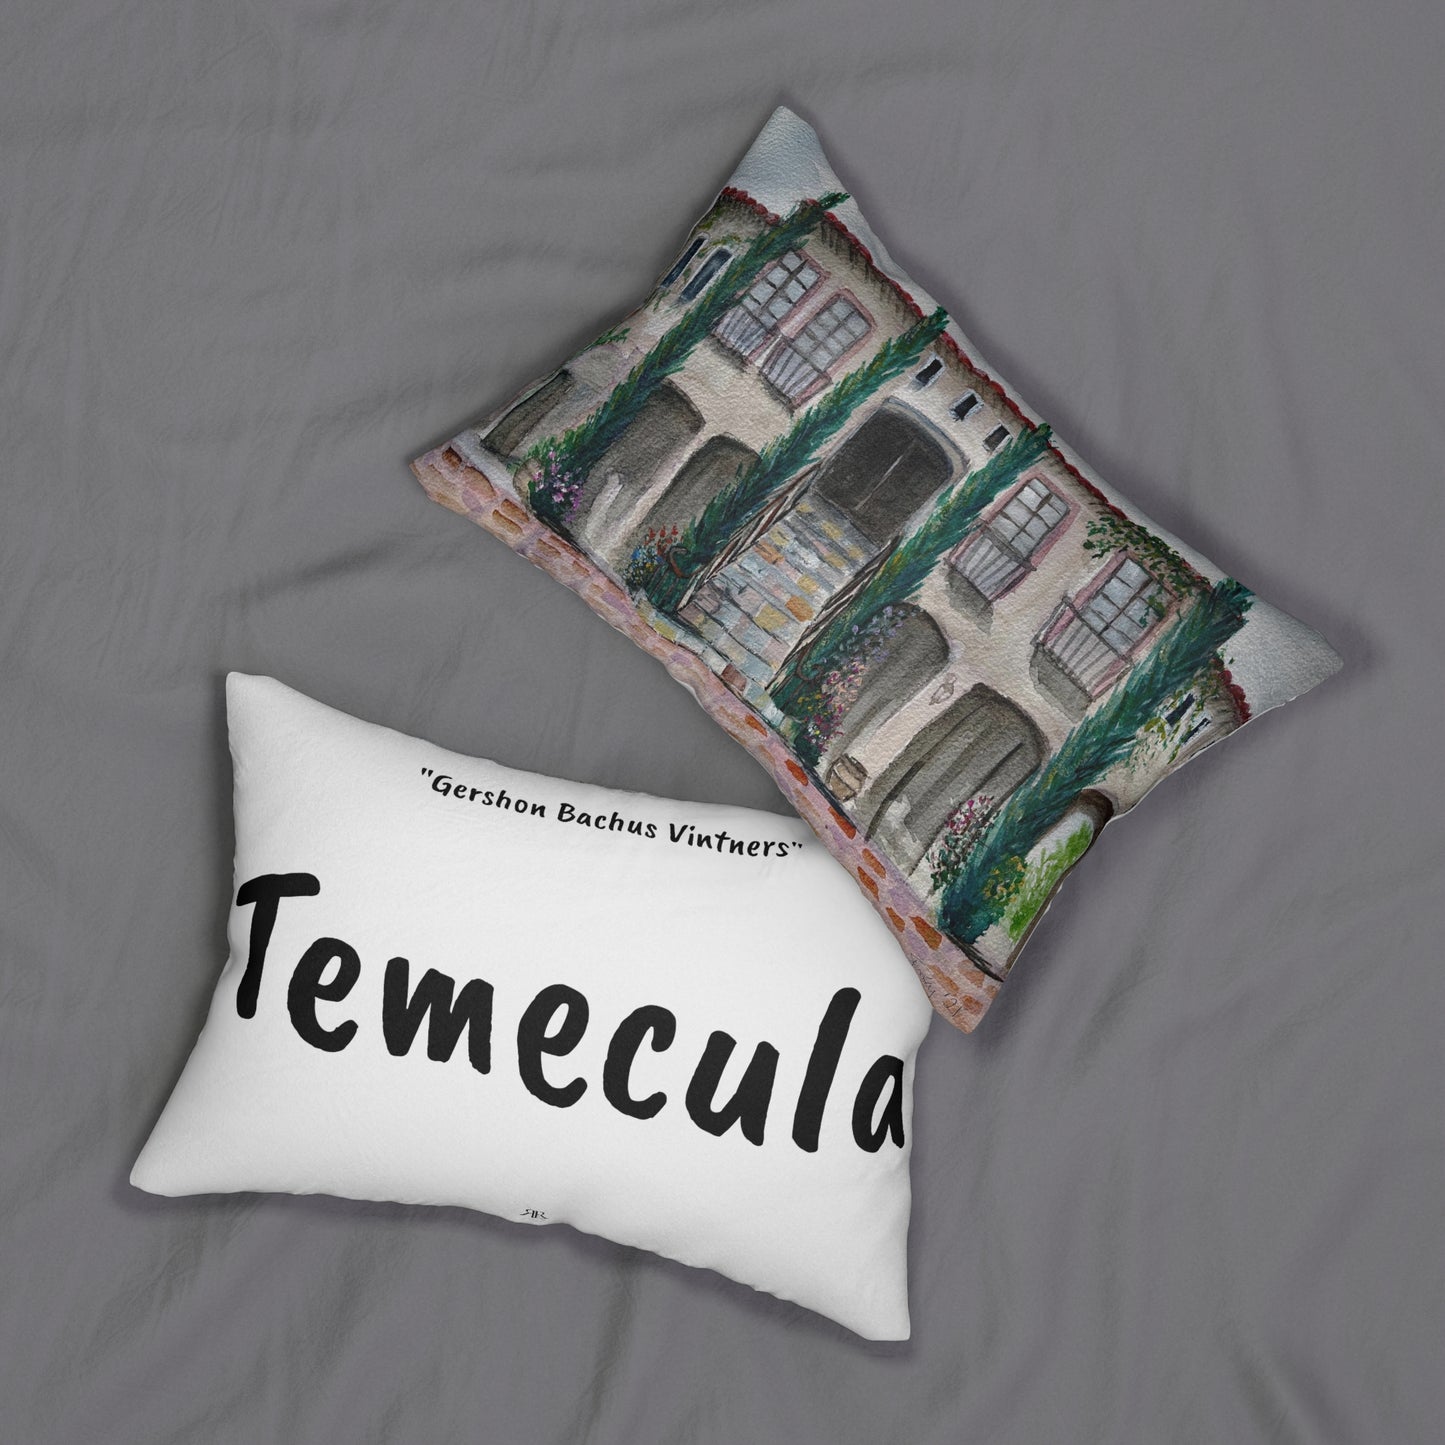 Temecula Lumbar Pillow featuring "Gershon Bachus Vintners" painting and "Temecula"